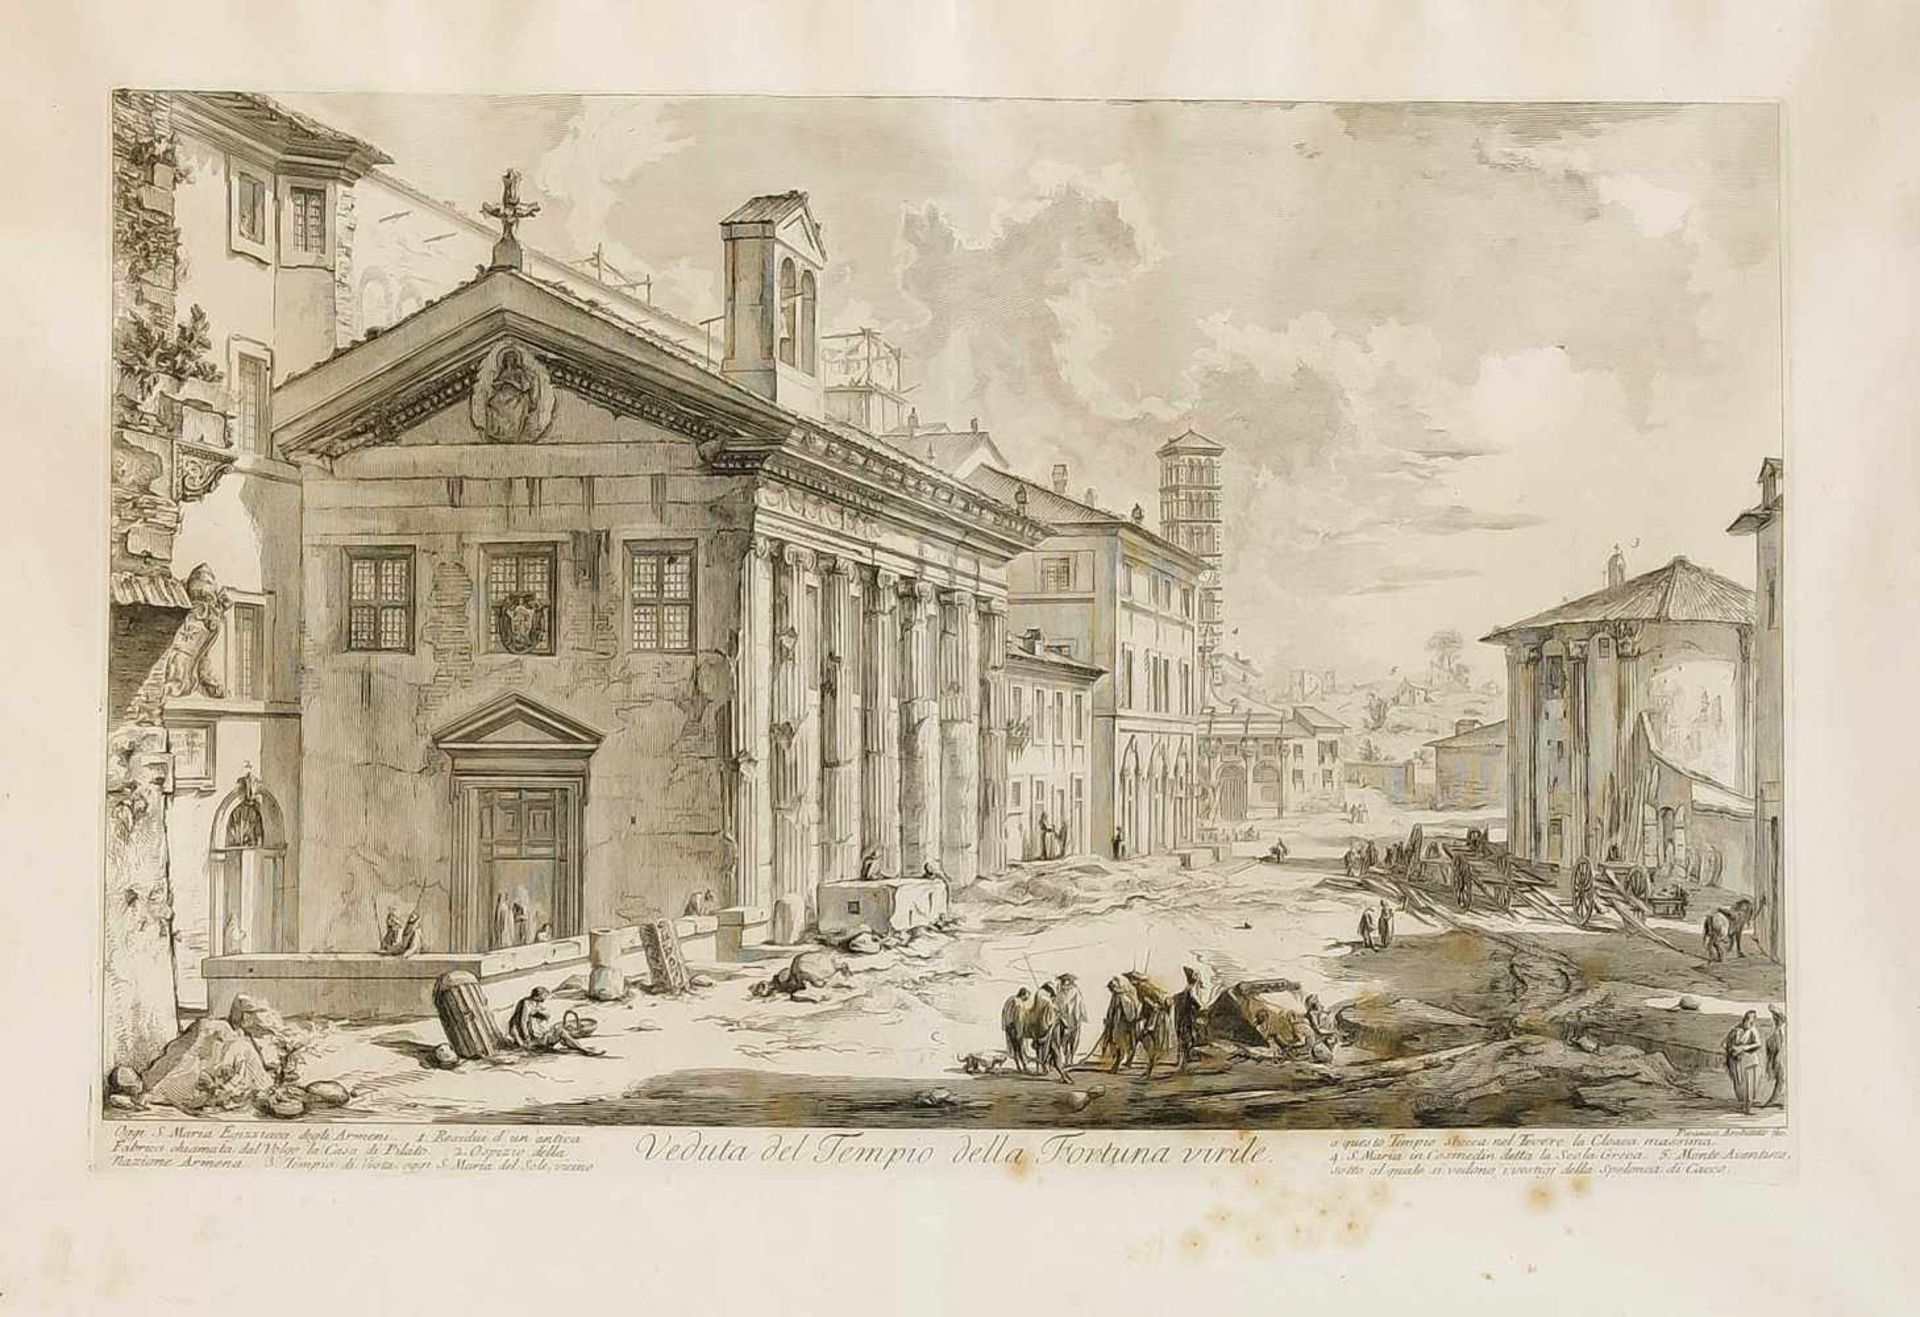 Giovanni Battista Piranesi (1720-1778), "Veduta del Tempio della Fortuna virile",Radierung aus der